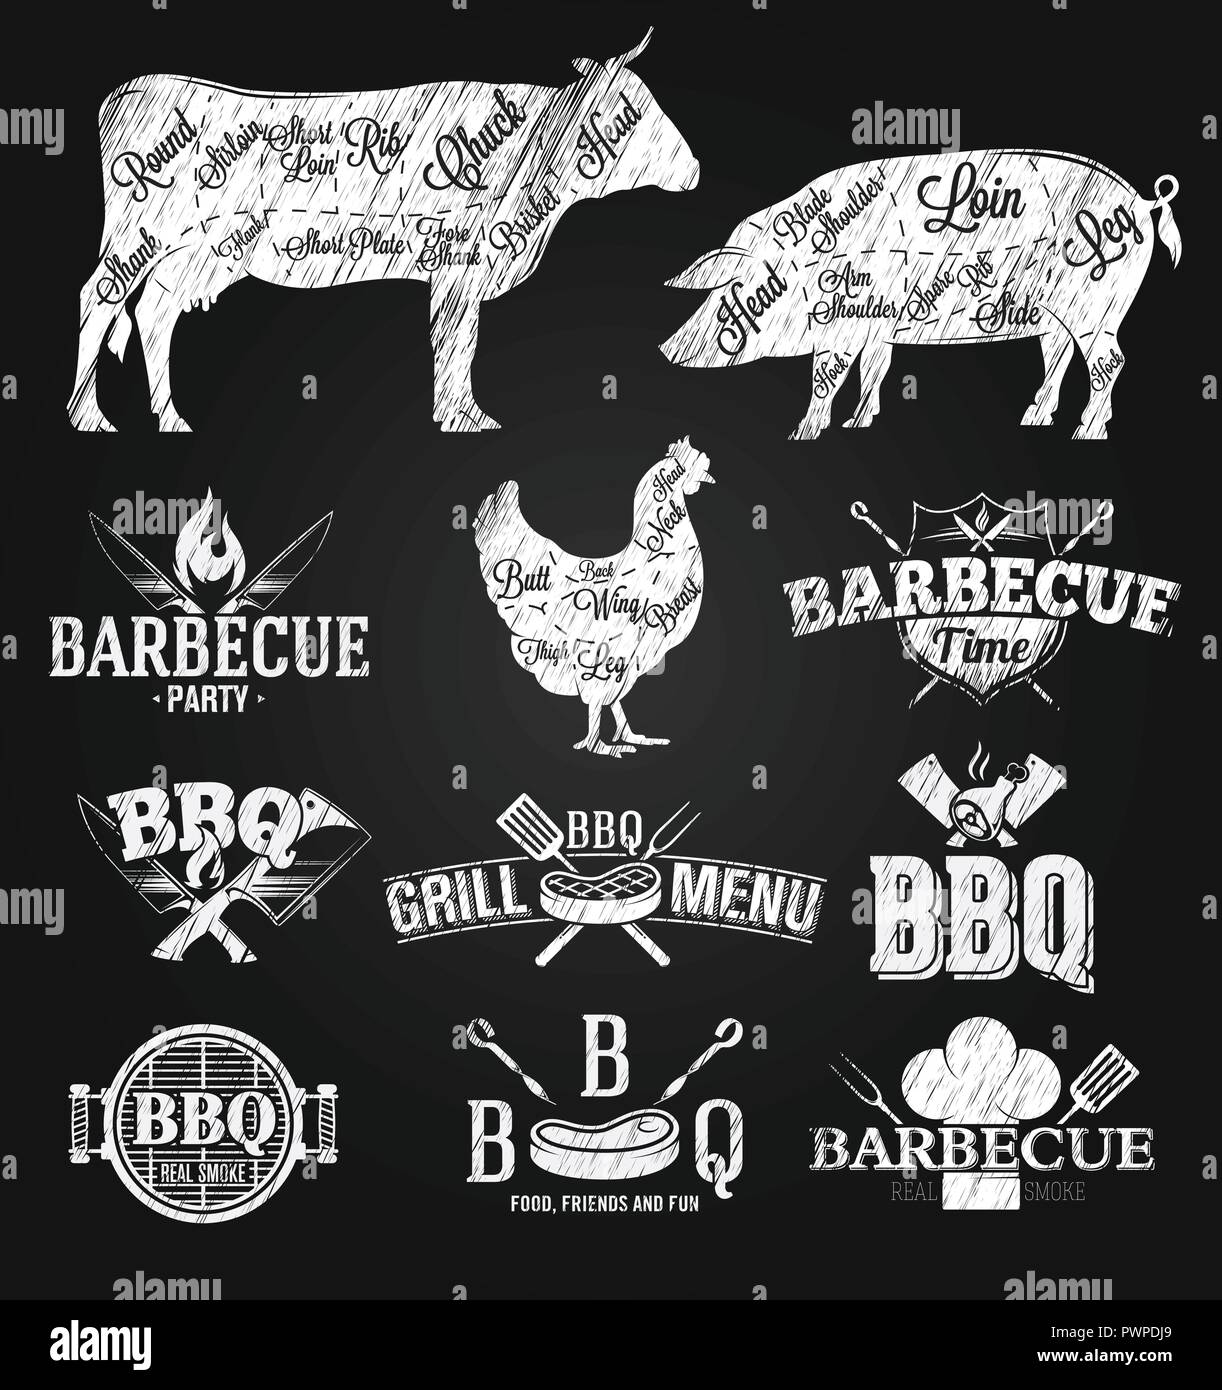 Logos et emblèmes barbecue Modèle de dessin à la craie pour la conception de votre logo Illustration de Vecteur